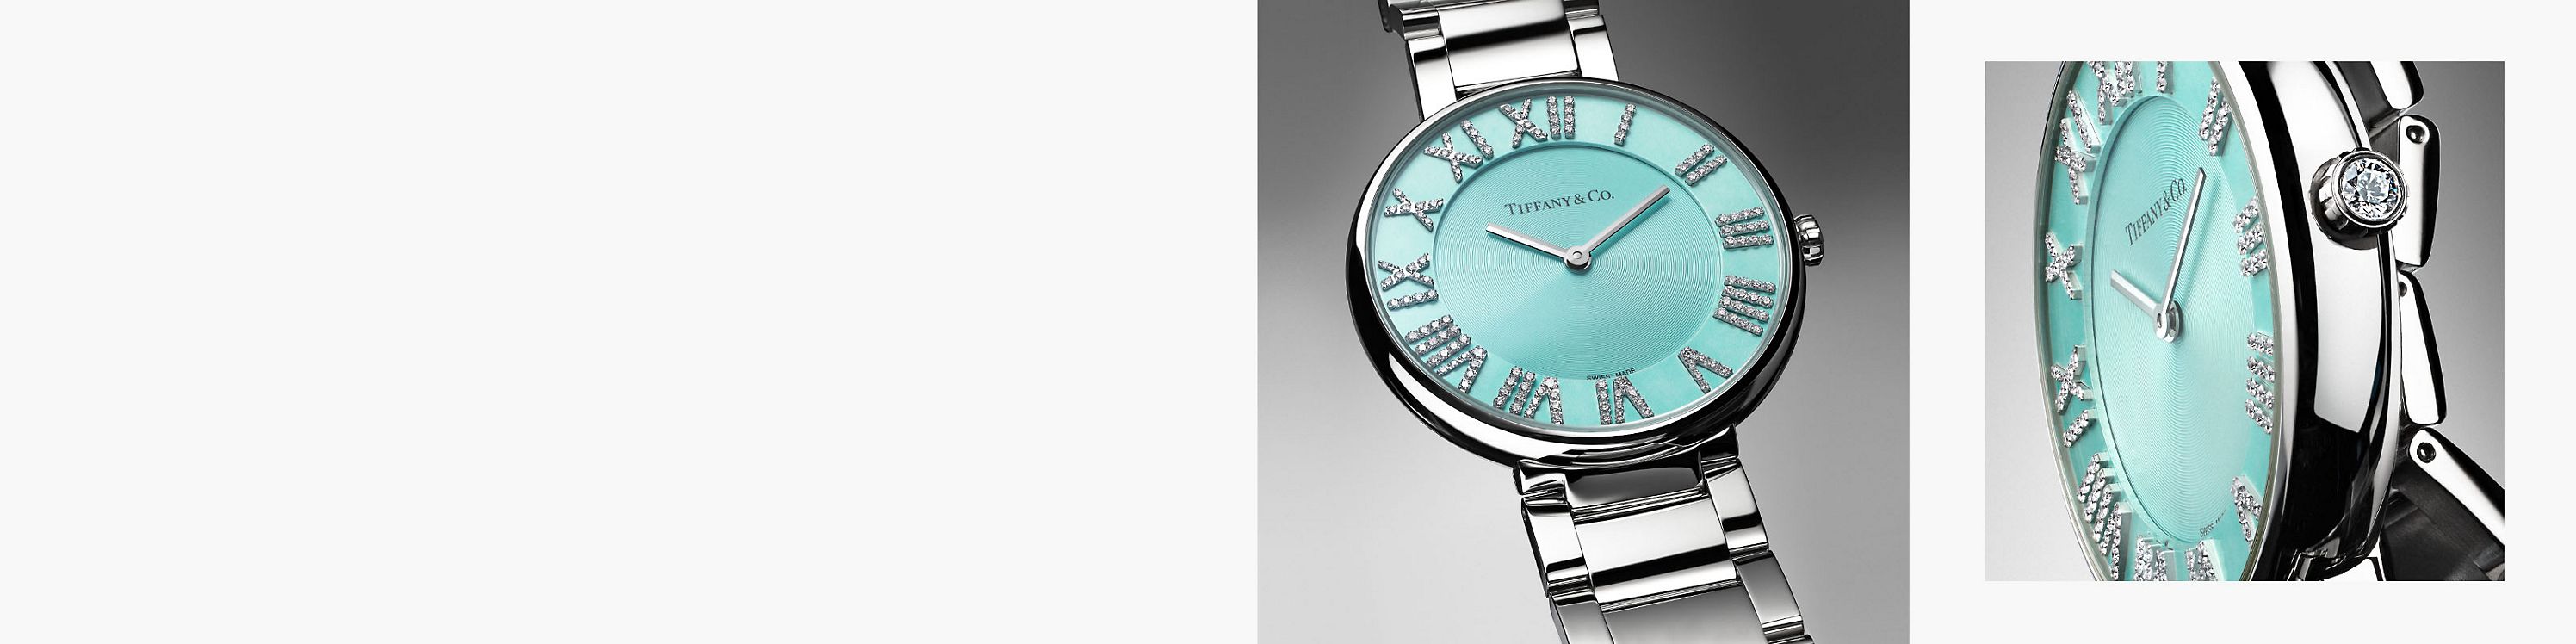 Scopri e acquista gli orologi Atlas® Tiffany & Co.